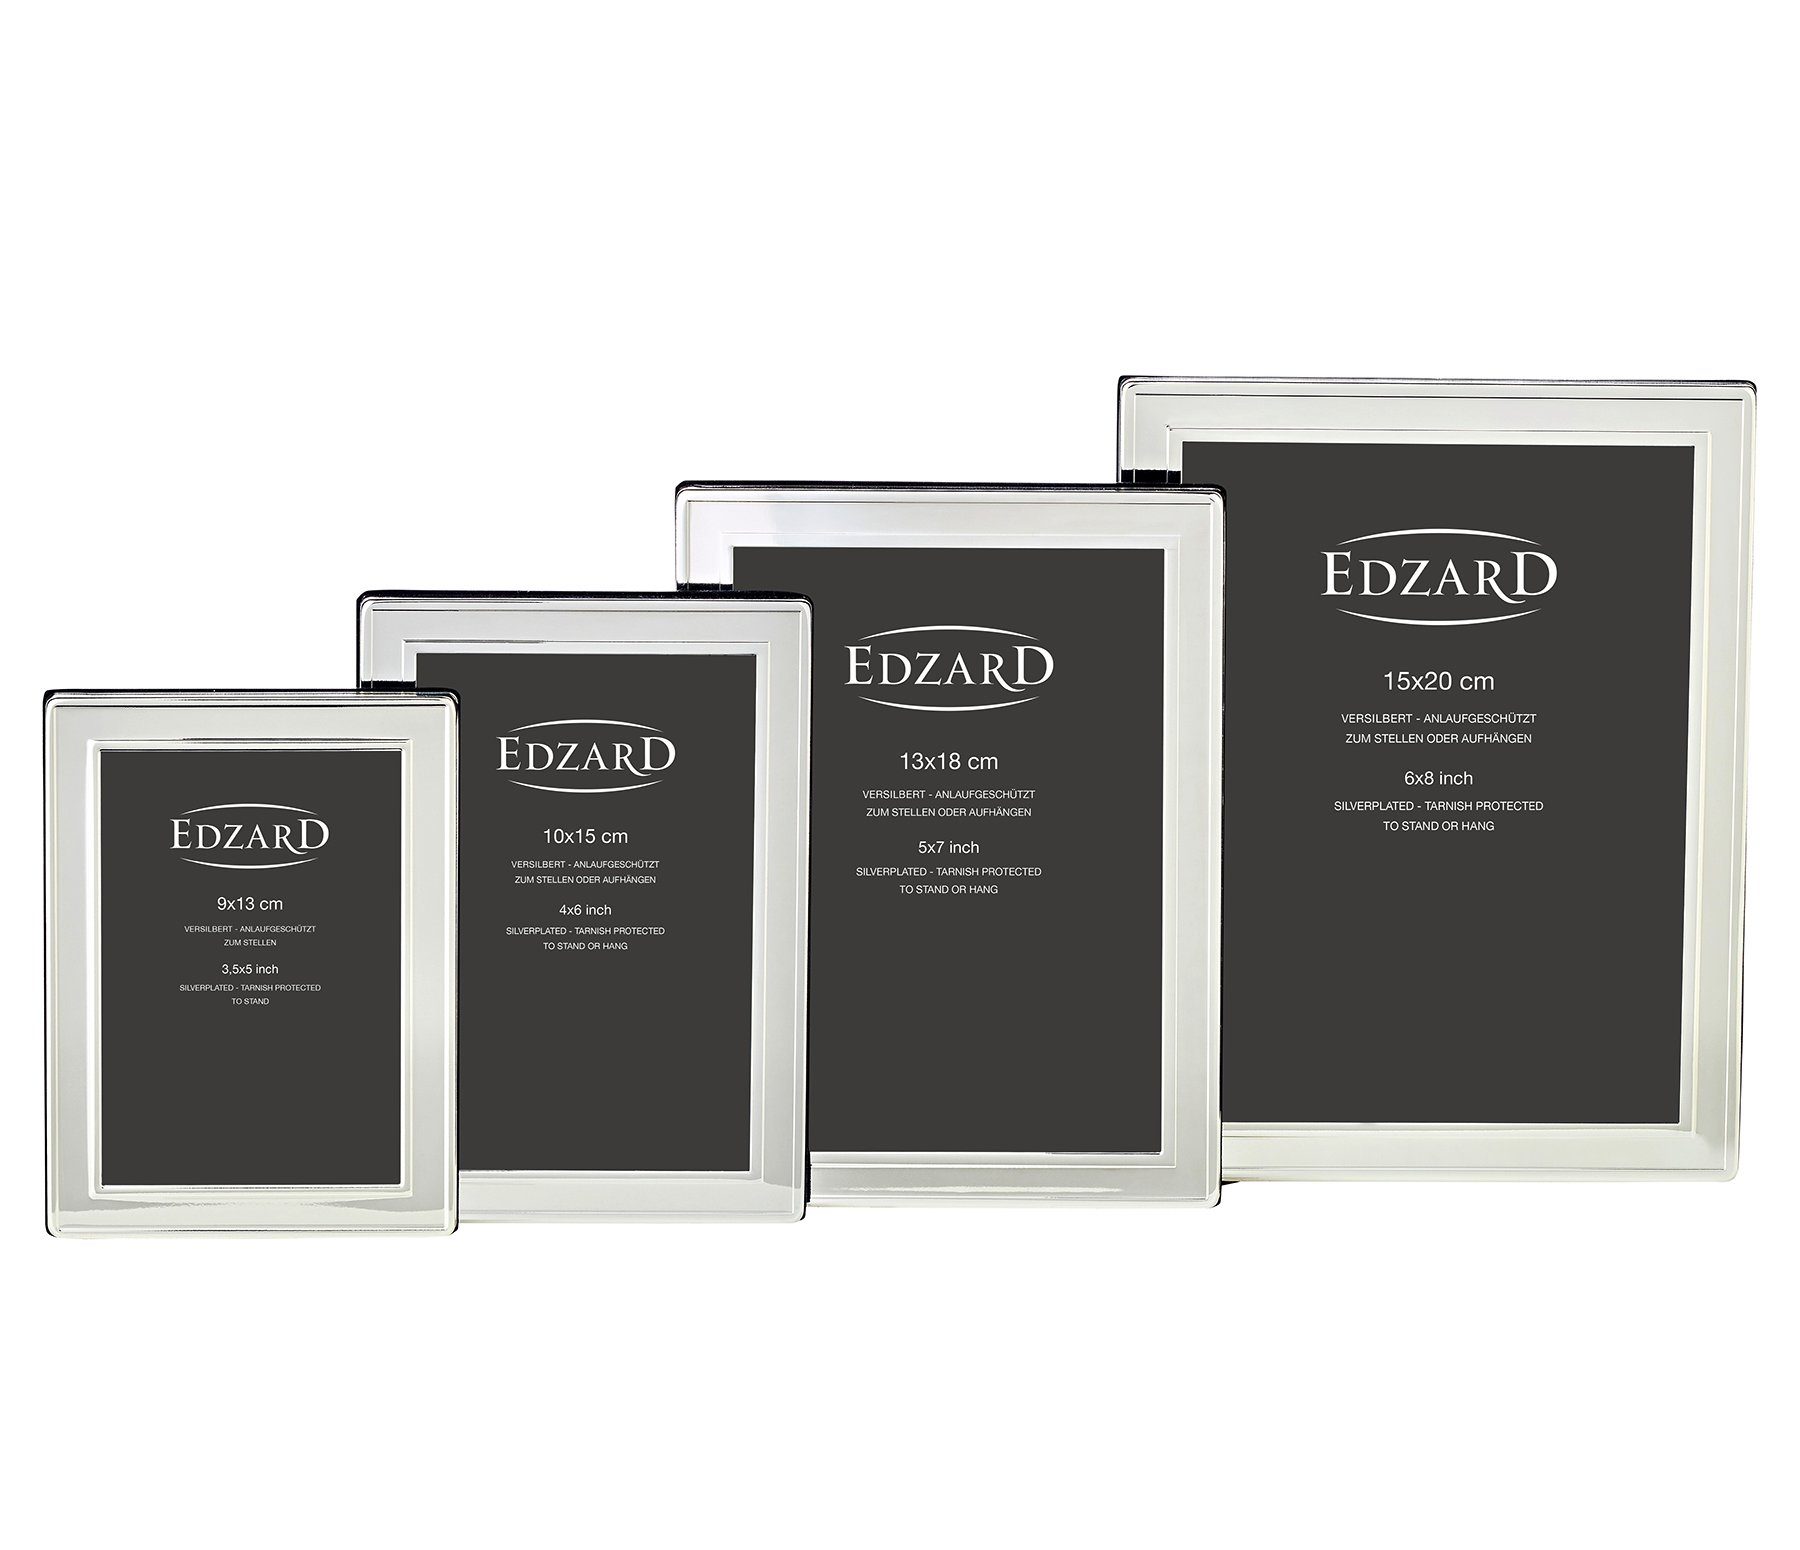 Bilderrahmen für EDZARD anlaufgeschützt, versilbert 10x15 Nardo, cm und Foto